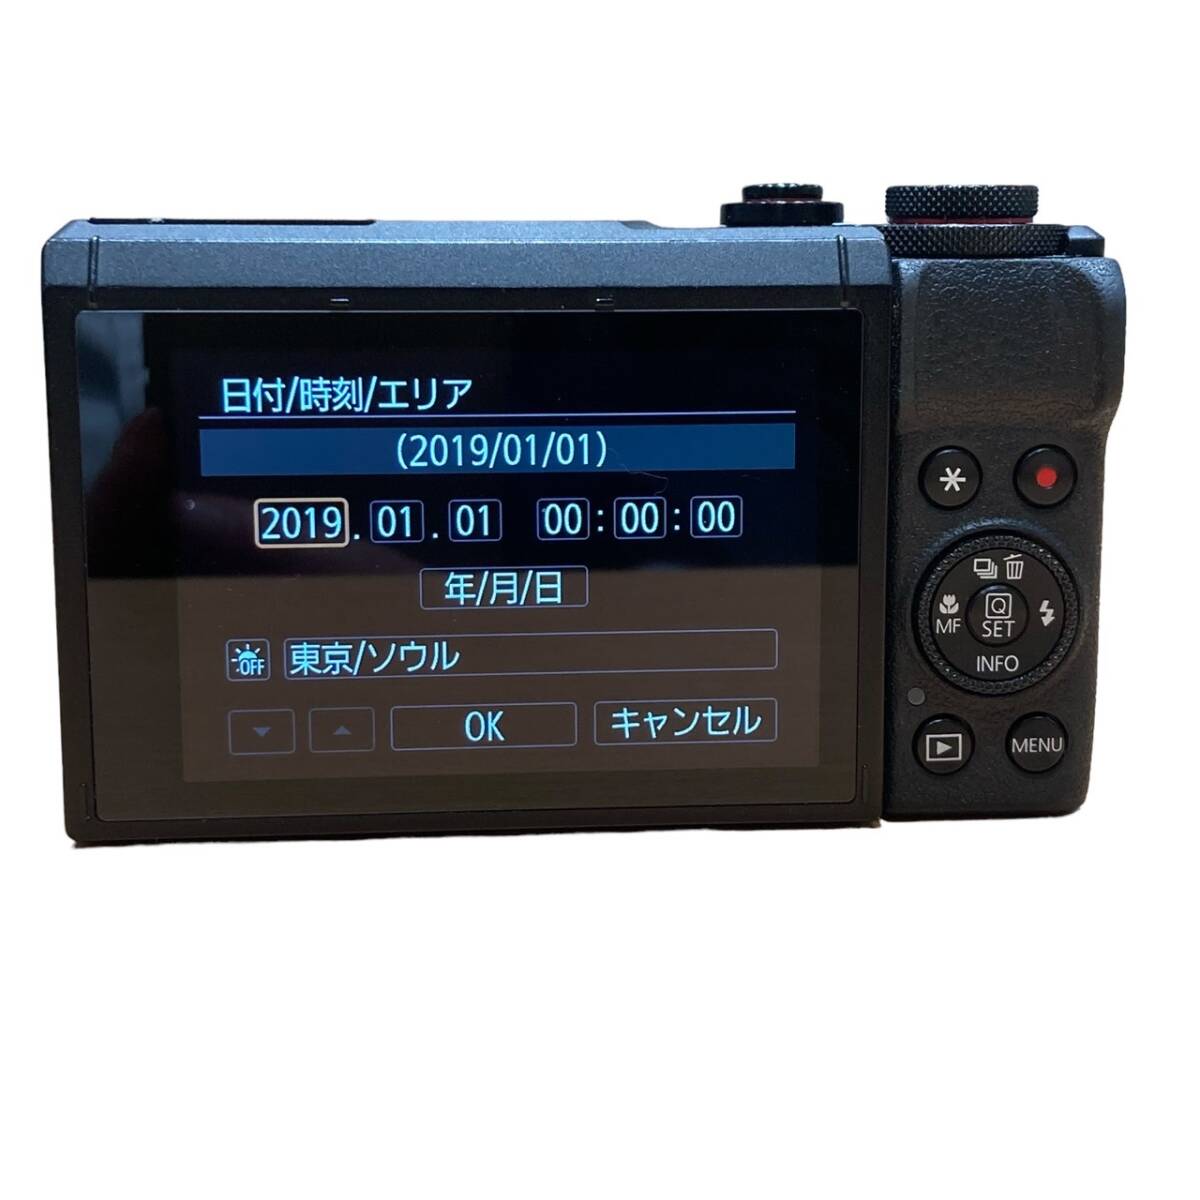 Canon キャノン PowerShot G7X Mark 3 MarkIII デジタルカメラ ブラック系の画像3